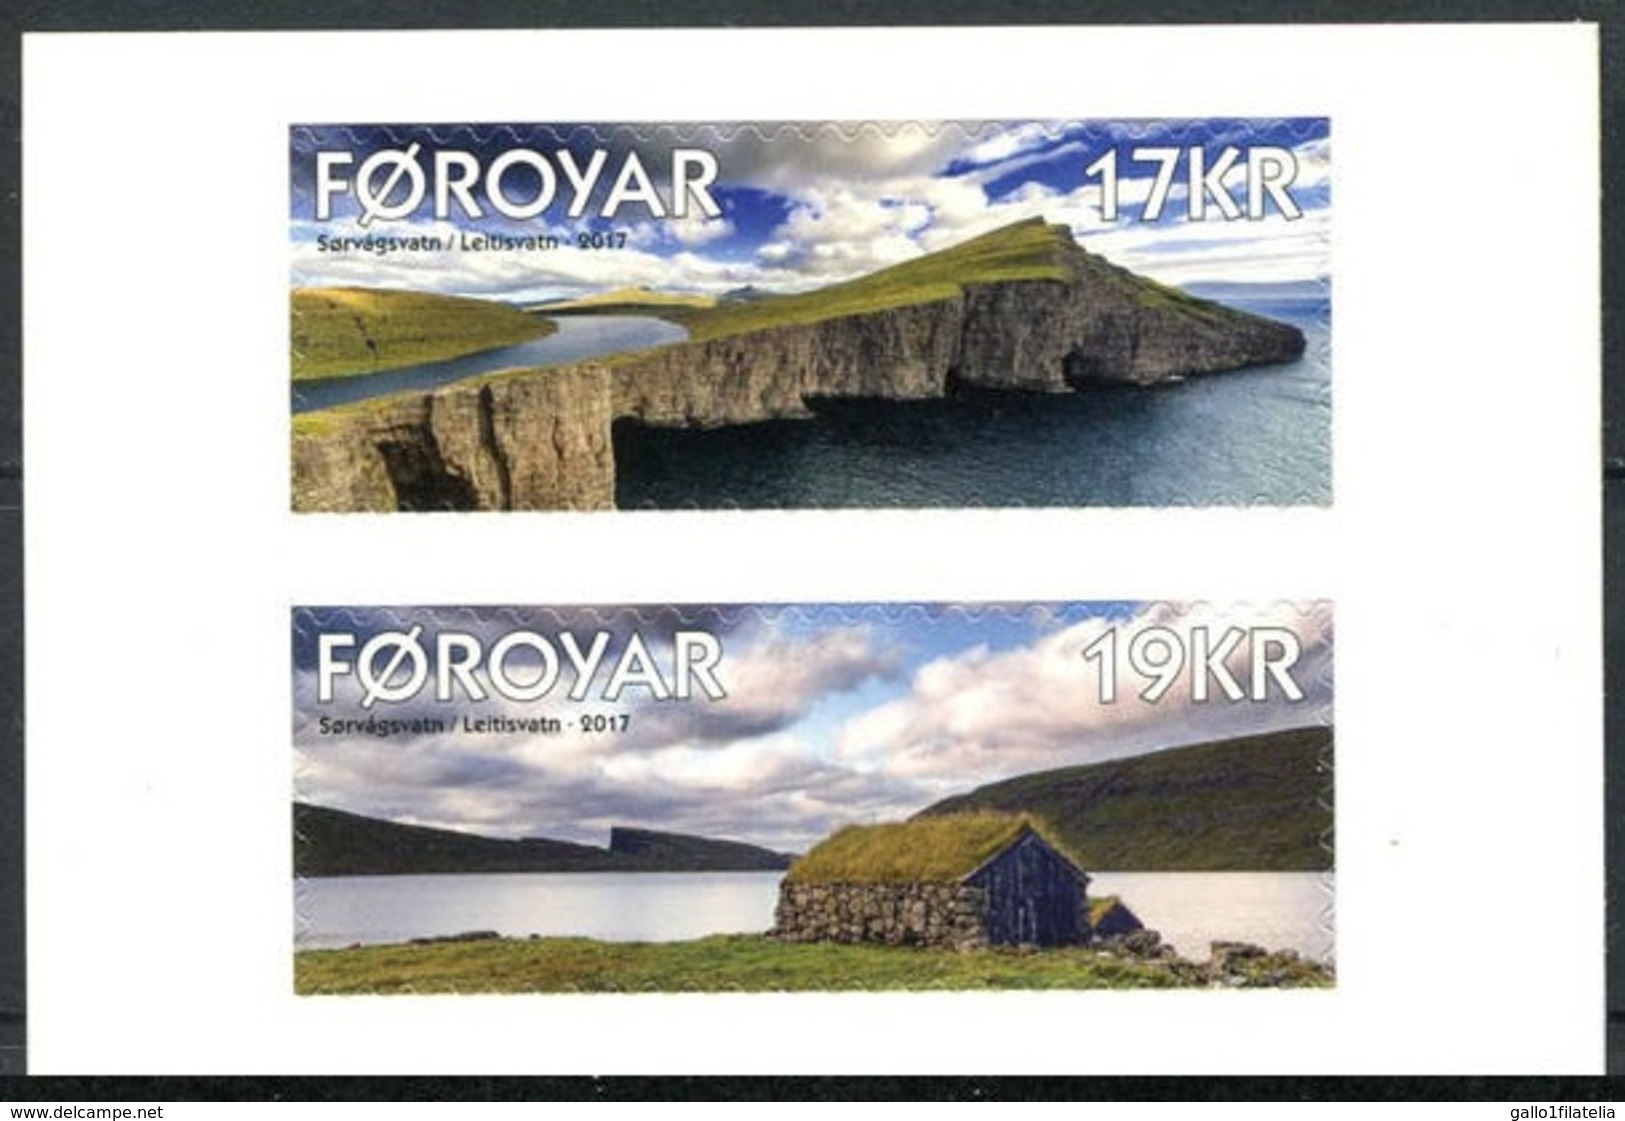 2017 - Fær Øer / FAROER - PAESAGGIO / LANDSCAPE - SET ADESIVO DA LIBRETTO / ADHESIVE SET FROM BOOKLET. MNH. - Isole Faroer